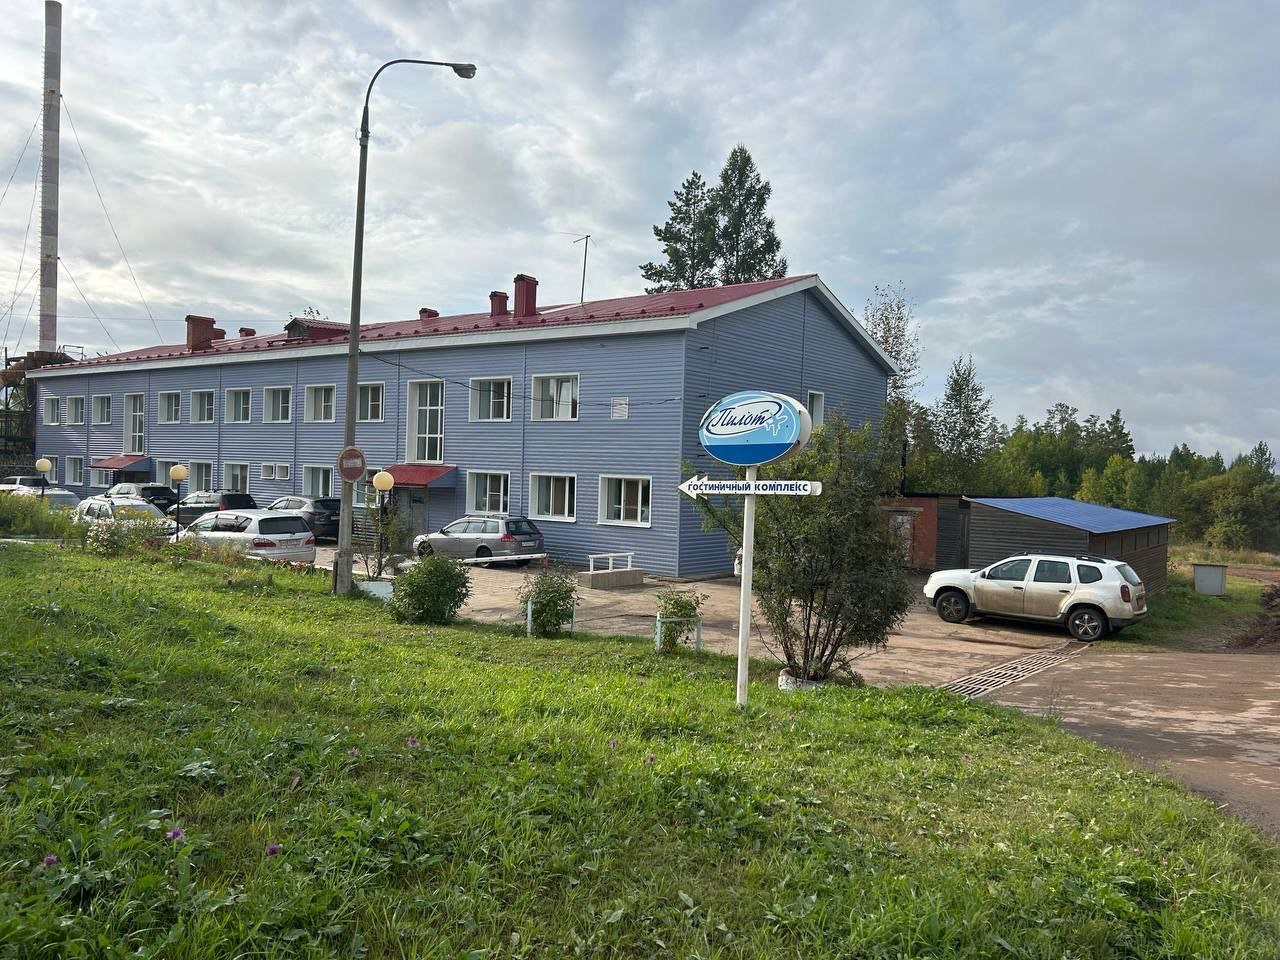 Минэкономразвития прокомментировало ситуацию с аккредитацией гостиницы «Пилот» в Братске
